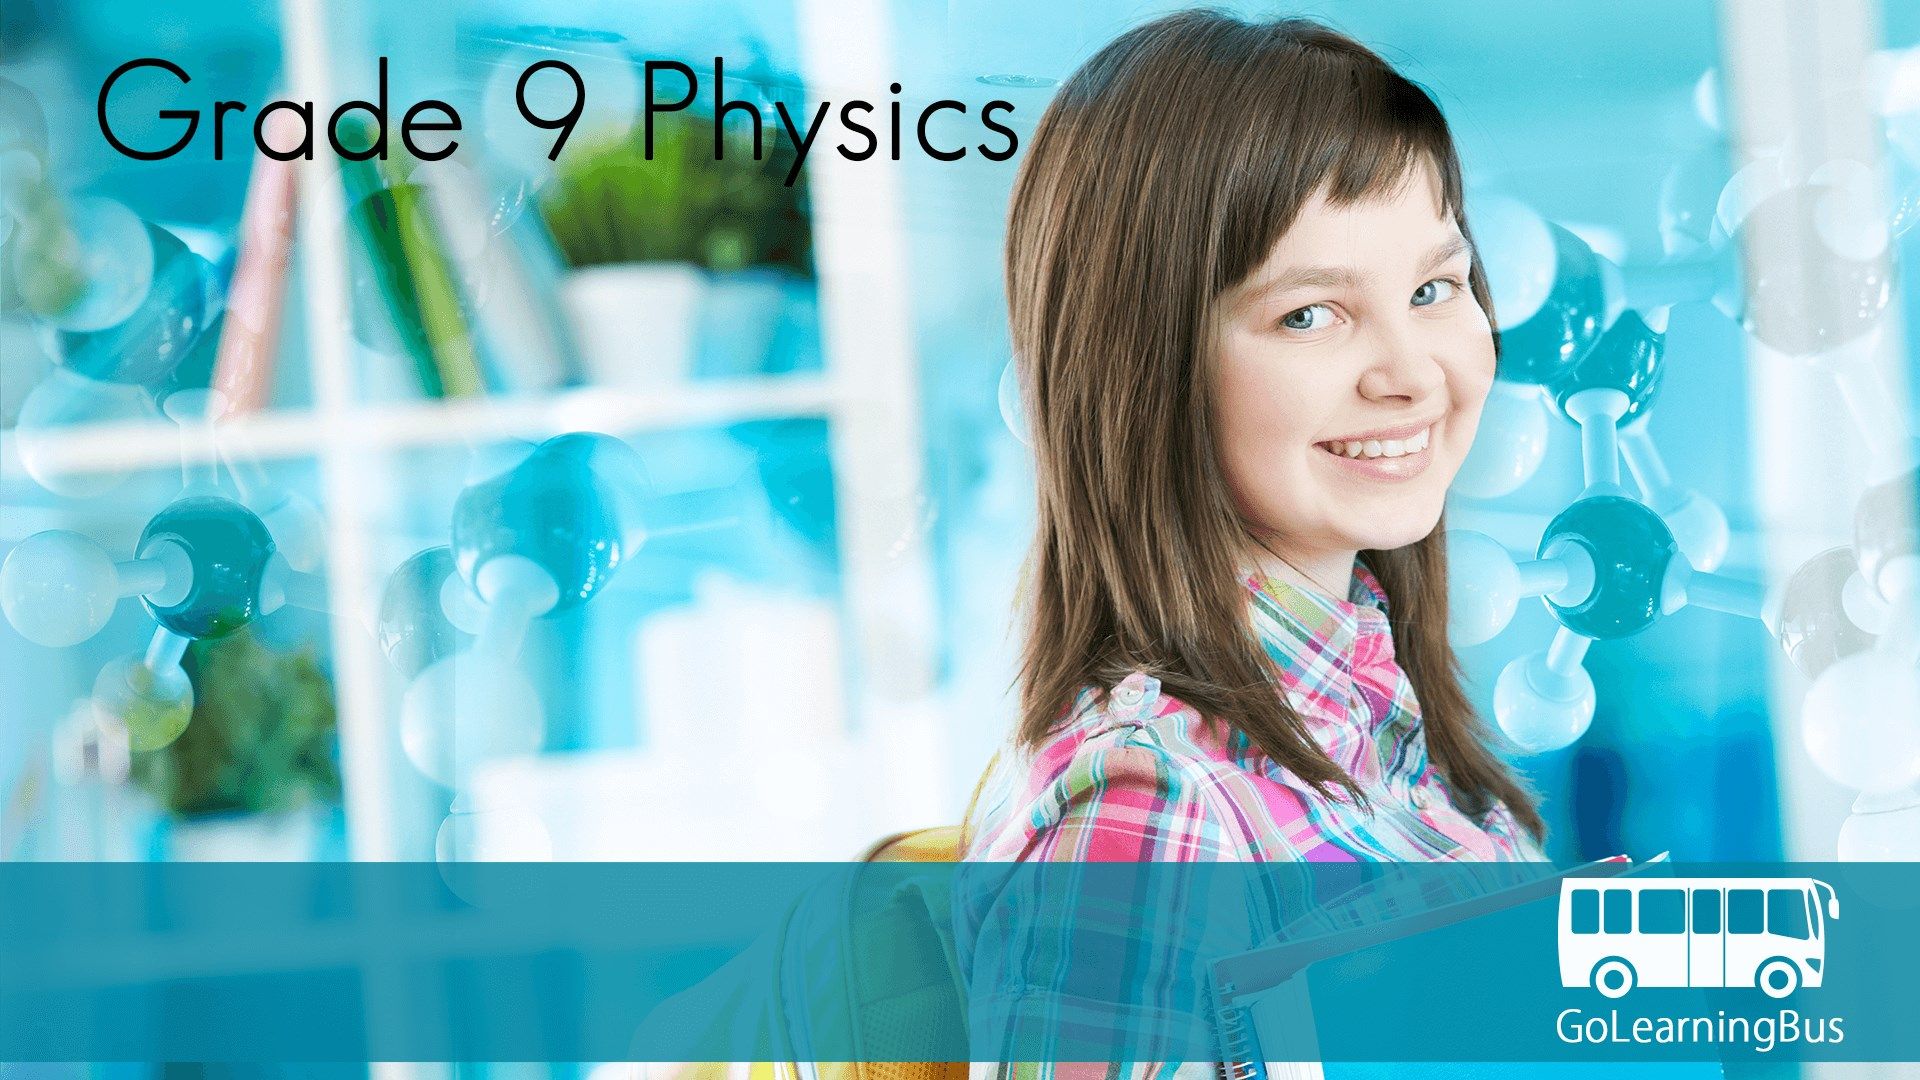 Grade 9 Physics by WAGmob